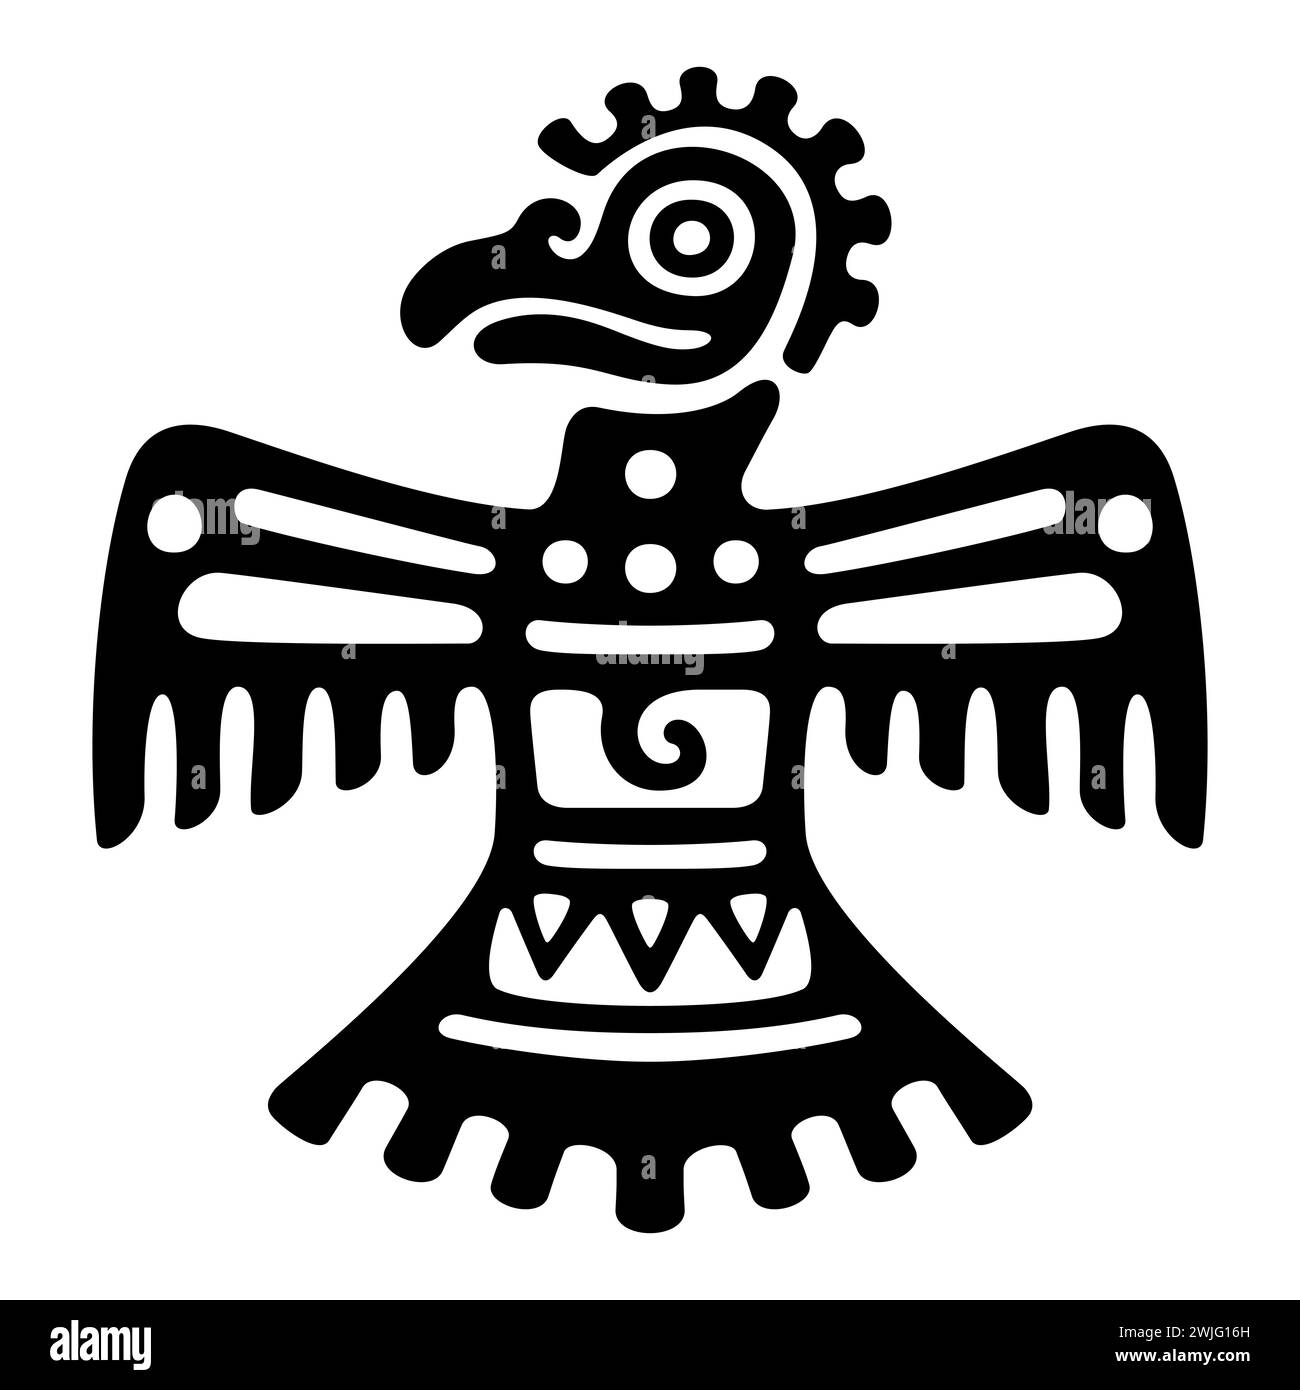 Roadrunner Symbol des alten Mexiko. Dekoratives aztekisches Tonstempelmotiv, das einen Kaparralvogel zeigt, wie er im präkolumbianischen Veracruz gefunden wurde. Stockfoto